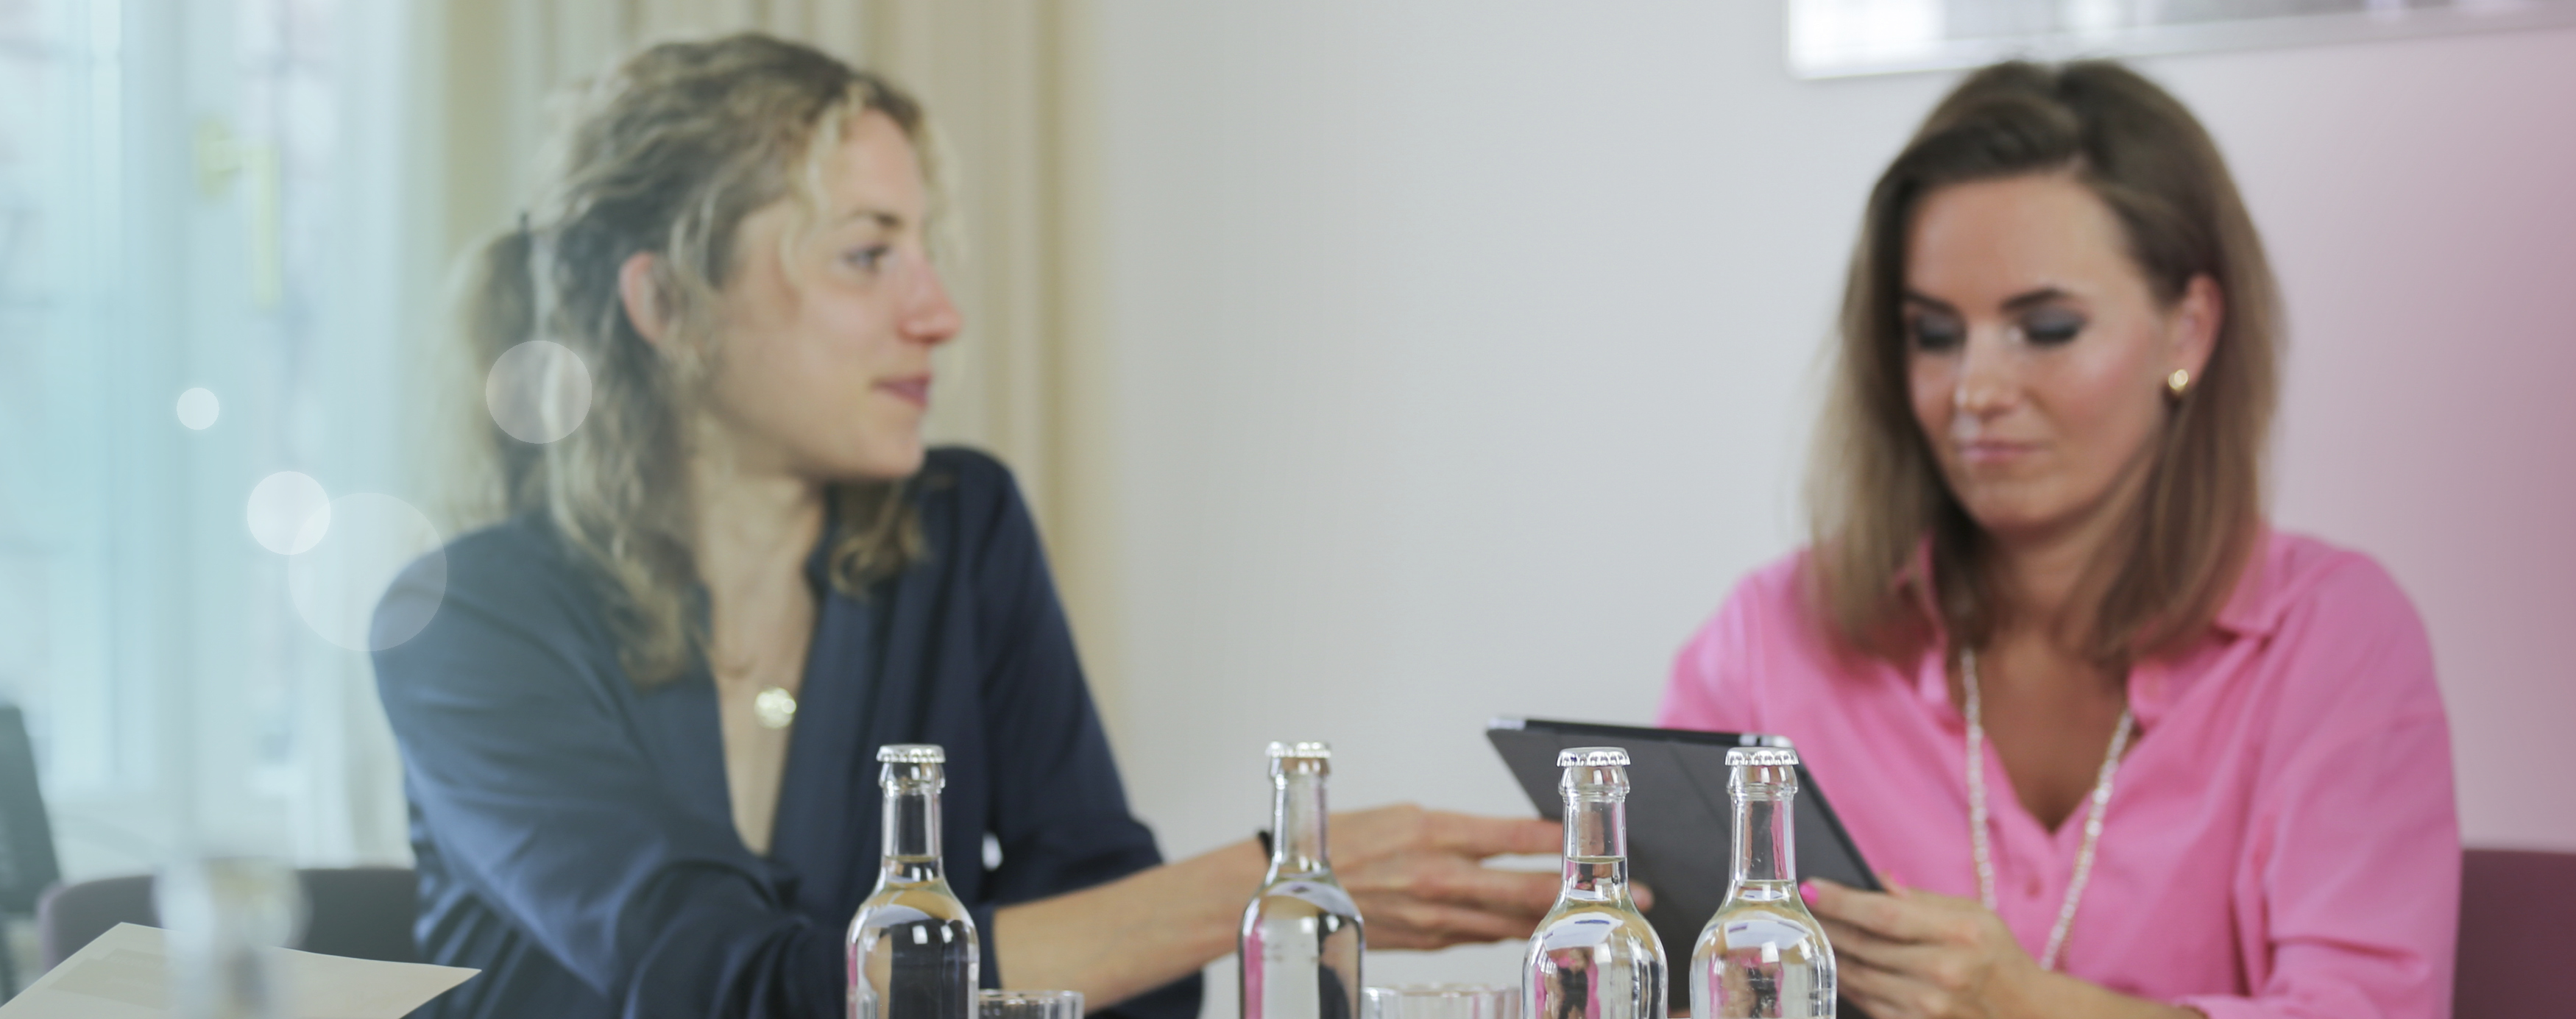 Zwei junge Frauen sitzen gemeinsam an einem Tisch und besprechen etwas auf einem Tablet, im Vordergrund zeichnen sich Wasserflaschen aus Glas ab.